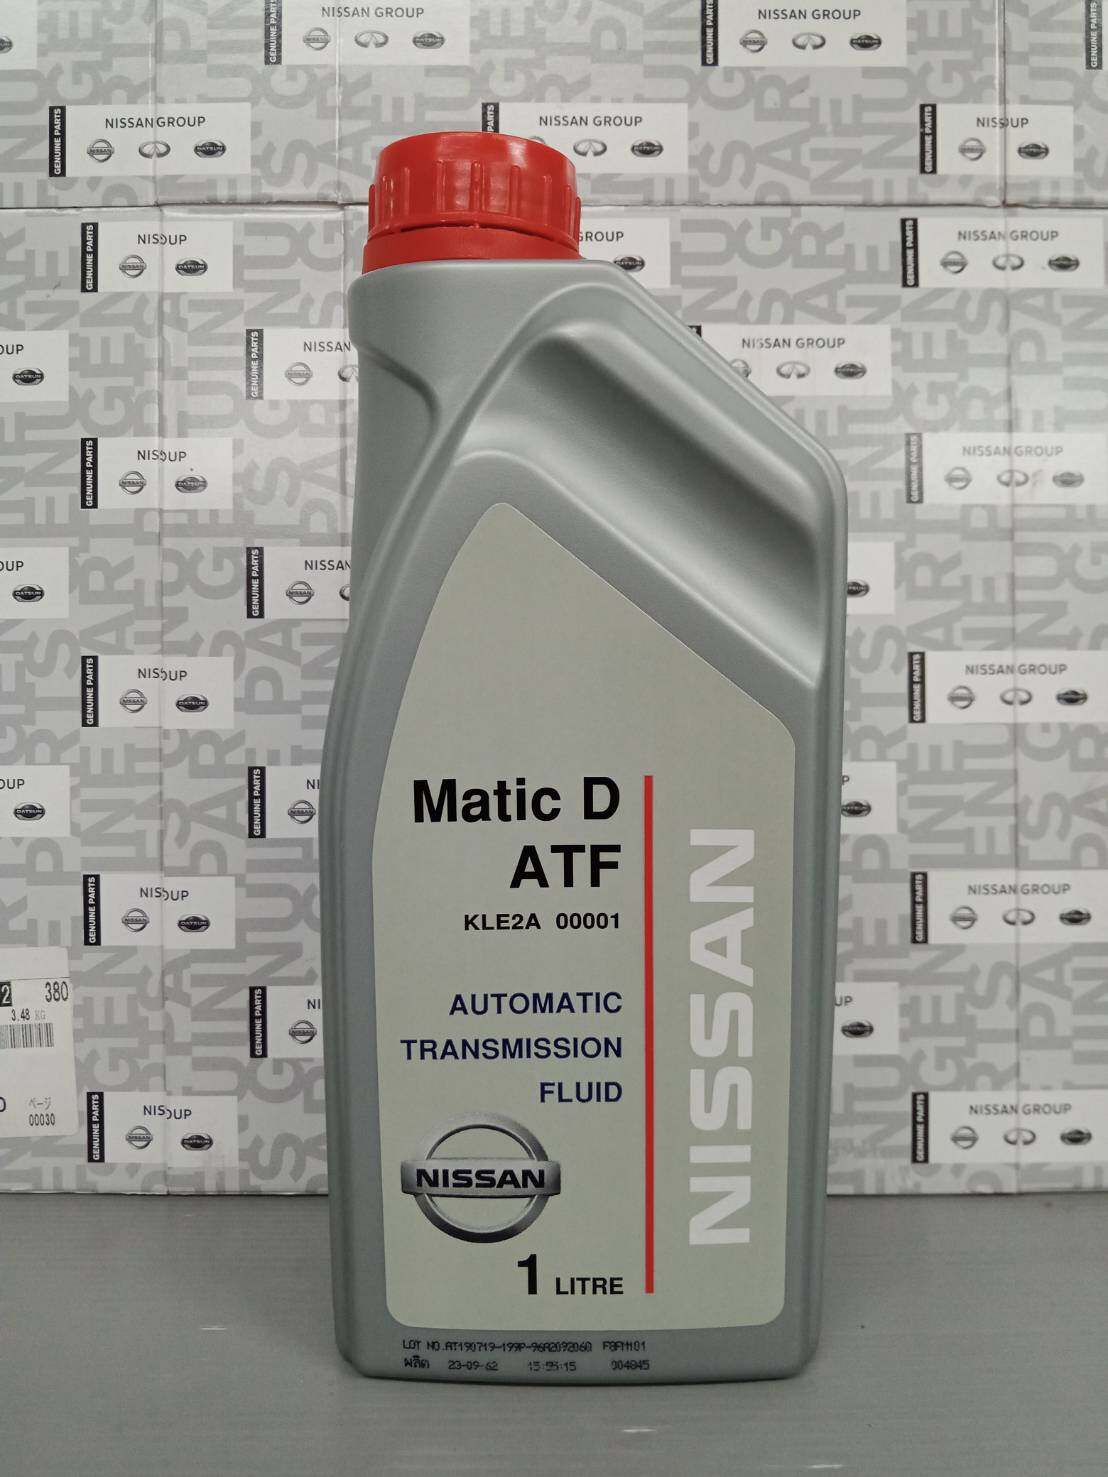 น้ำมันเพาเวอร์ MATIC D ATF 1 ลิตร (เป็นอะไหล่แท้ Nissan) รหัส B11